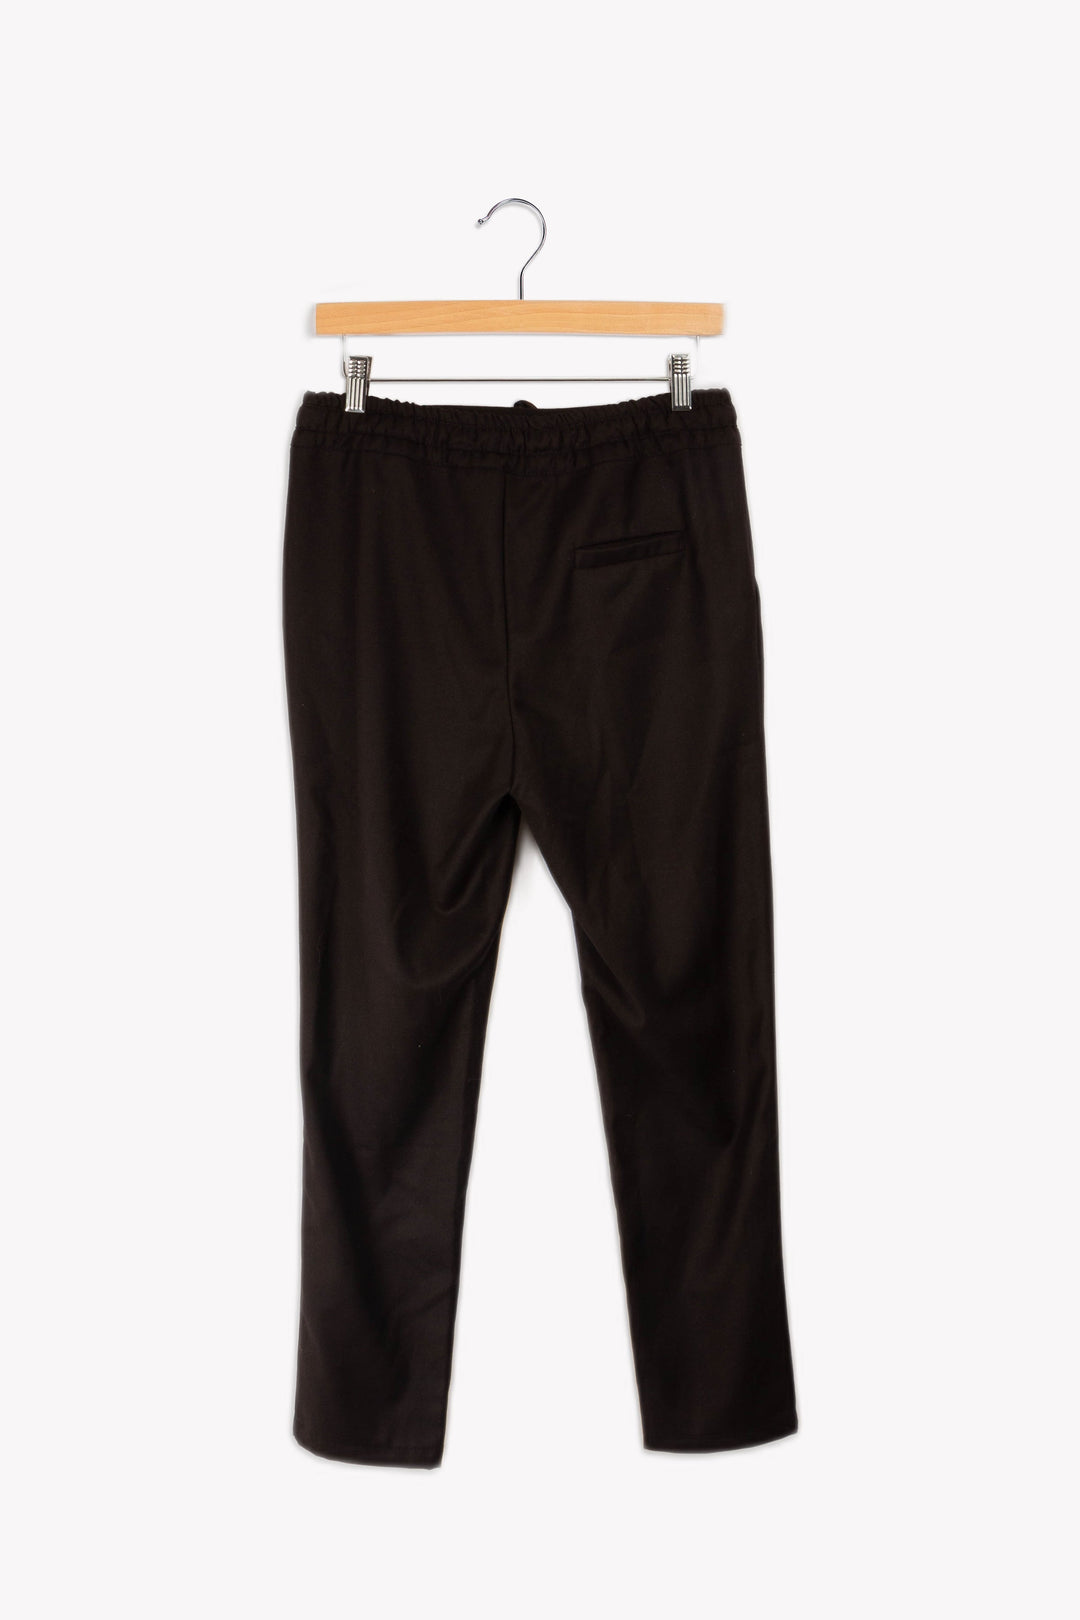 Pantalon noir - 36